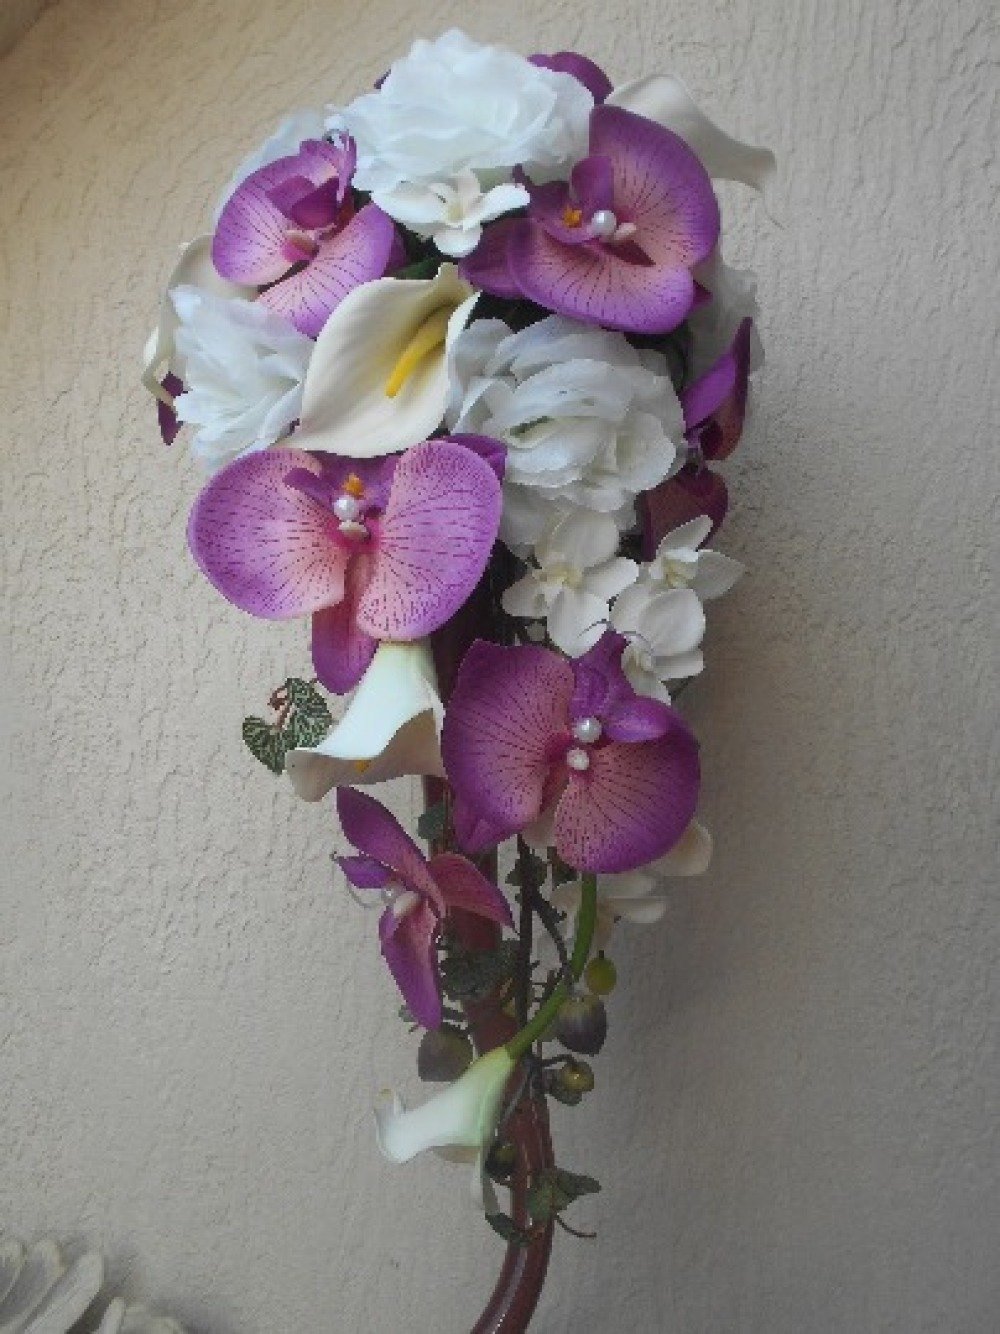 Bouquet de mariée pour mariage violet et blanc orchidées